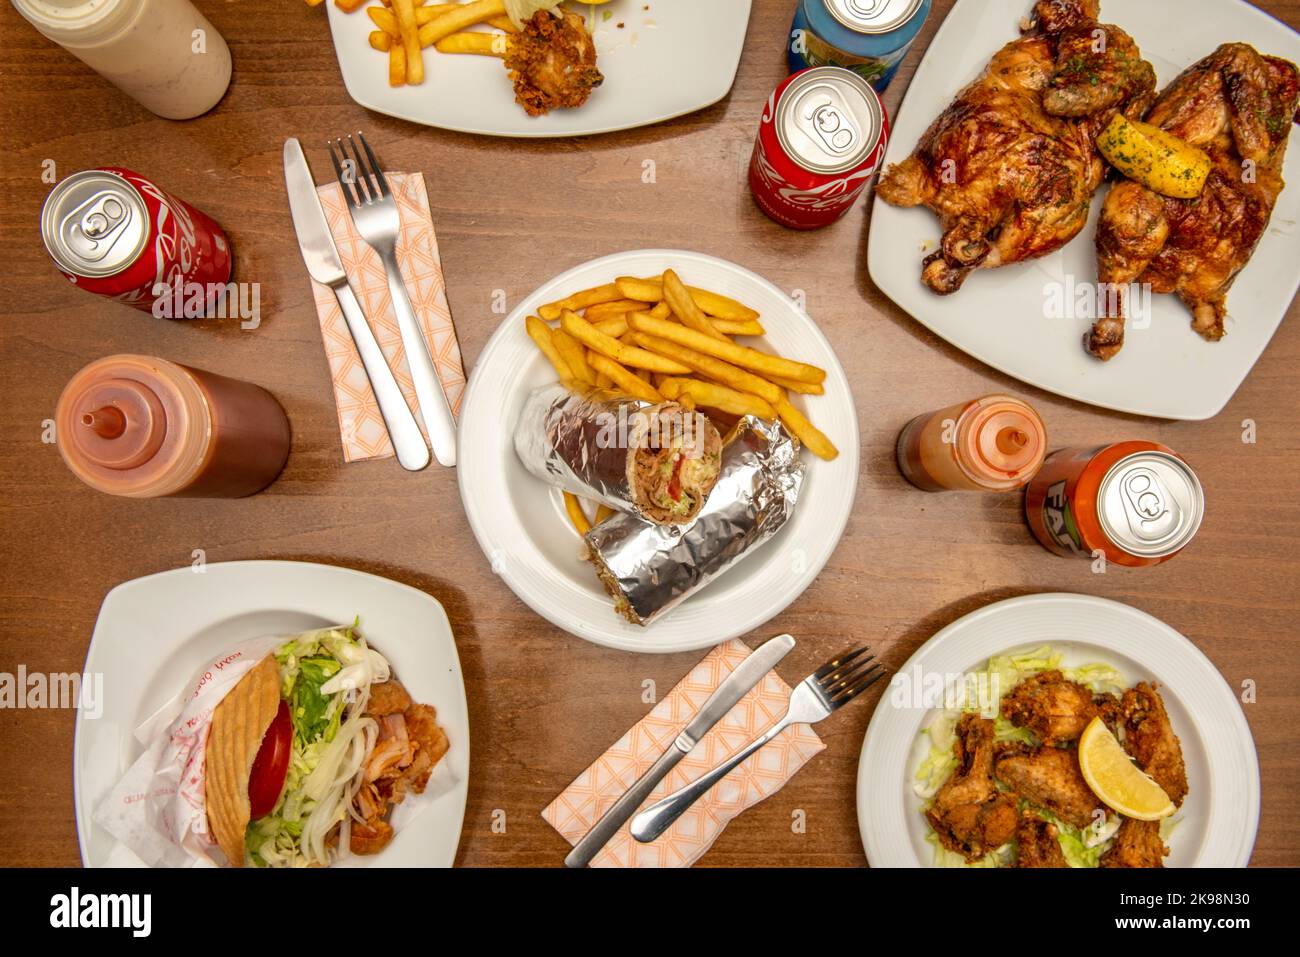 Ensemble de plats typiques de restaurant kebab avec sandwich au blé dur avec viande d'agneau avec salade, viande, laitue et oignon sur une assiette blanche sur une table en bois Banque D'Images